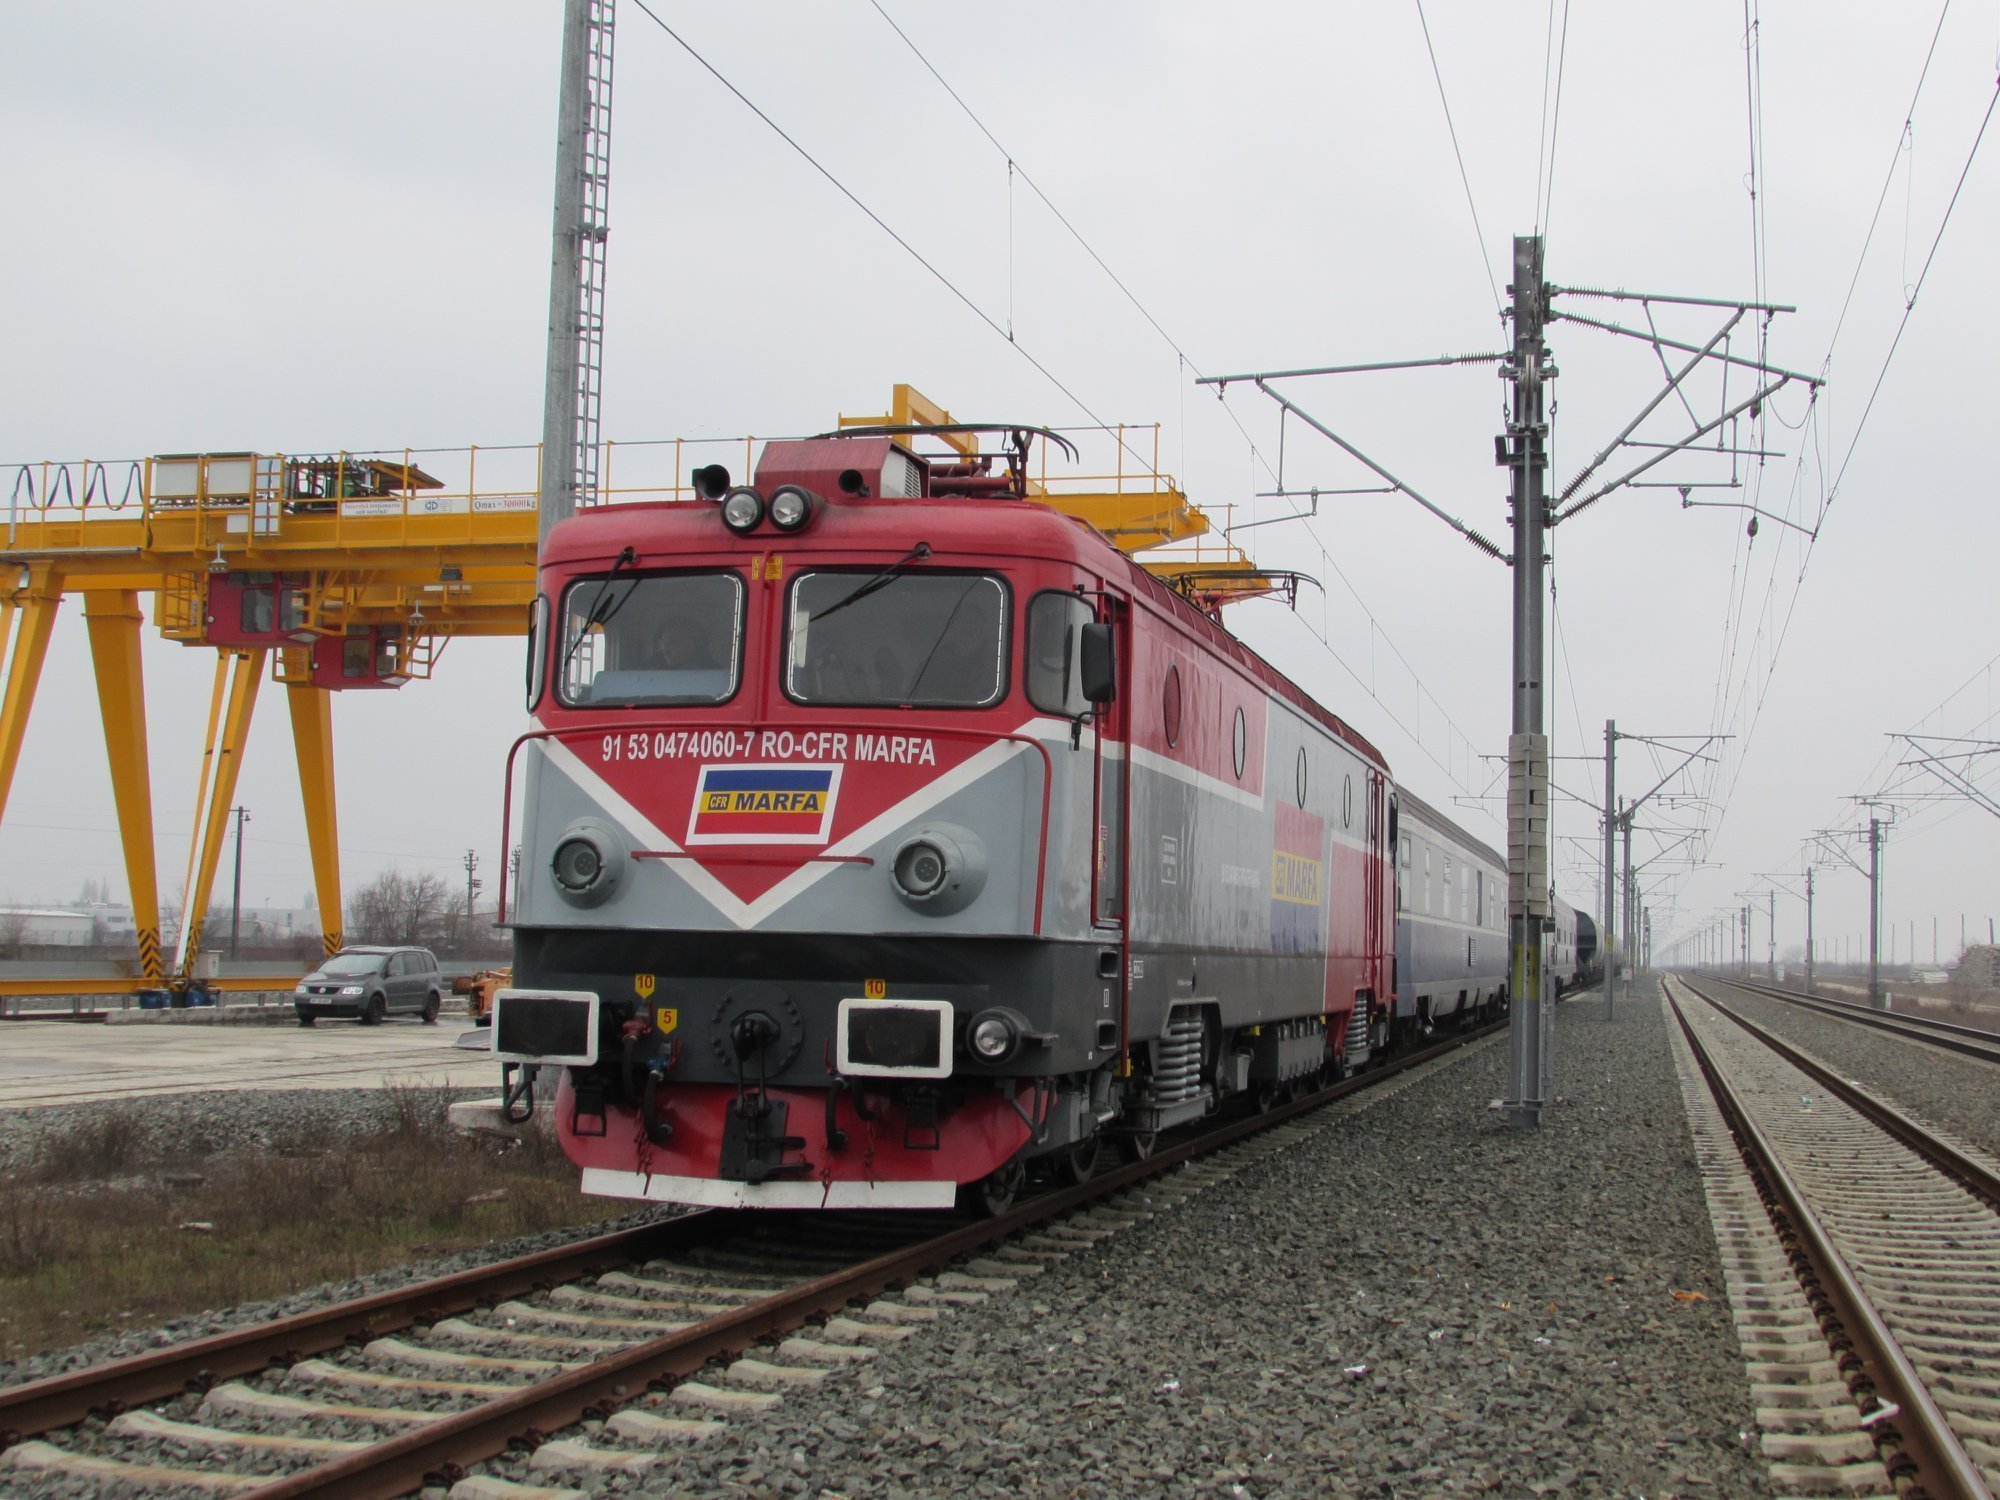 Tragedie pe calea ferată! O persoană a murit după ce a fost călcată de tren, pe ruta București Nord-Brașov